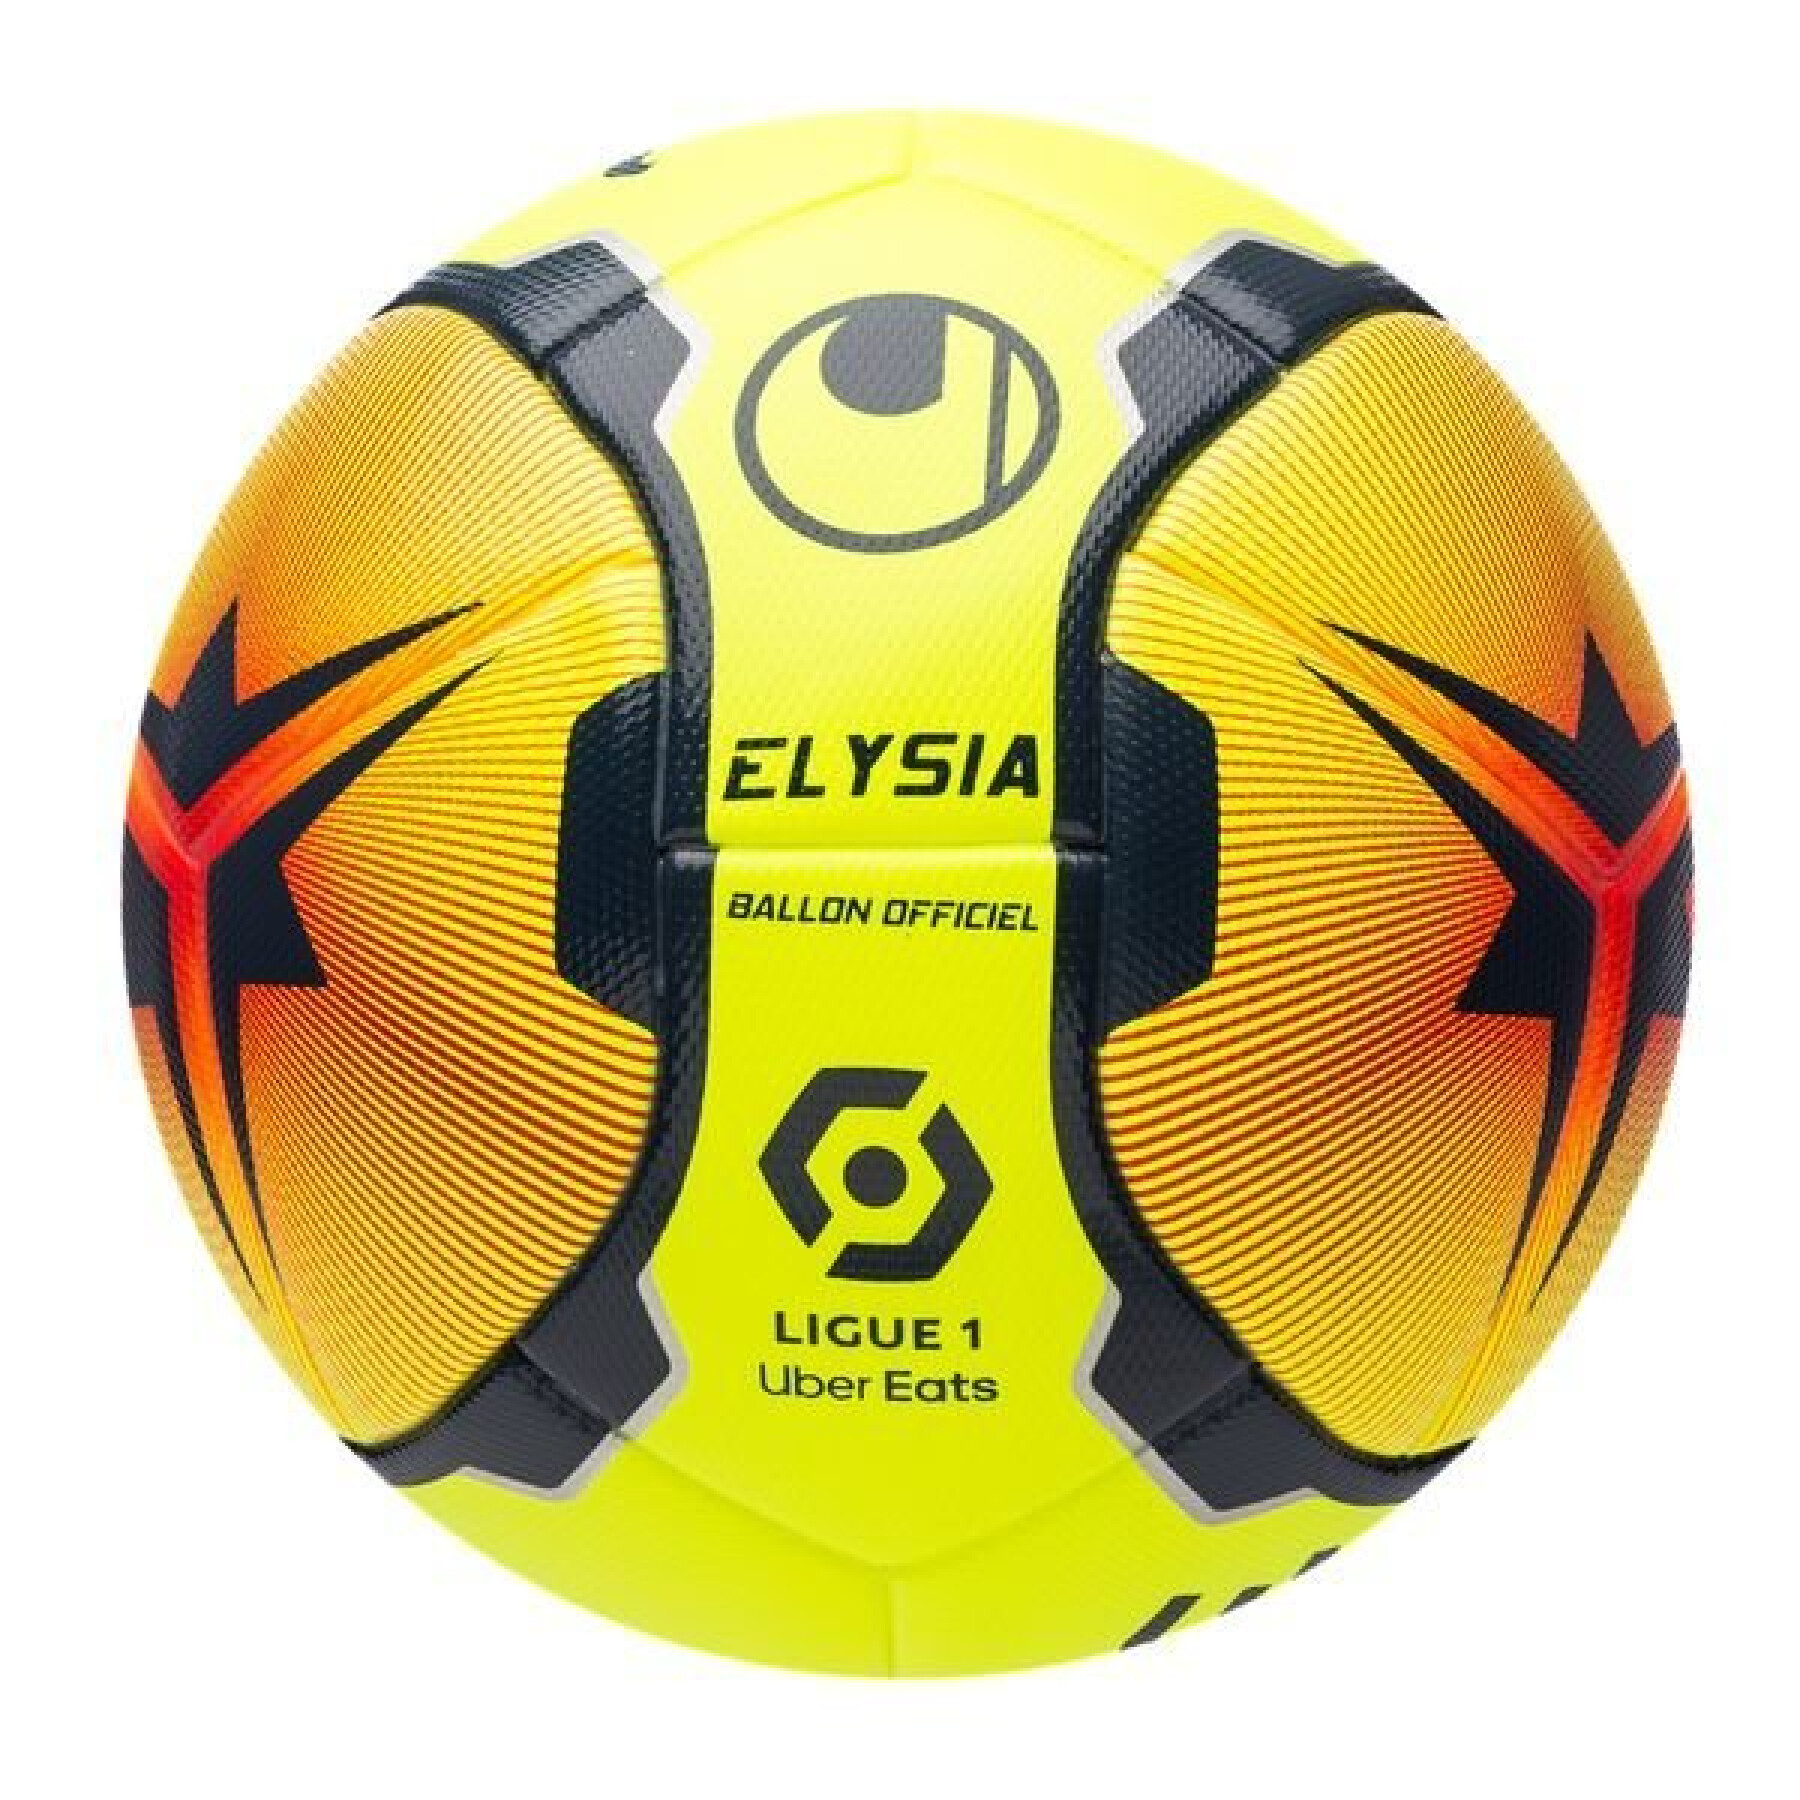 Balon Uhlsport Elysia officiel